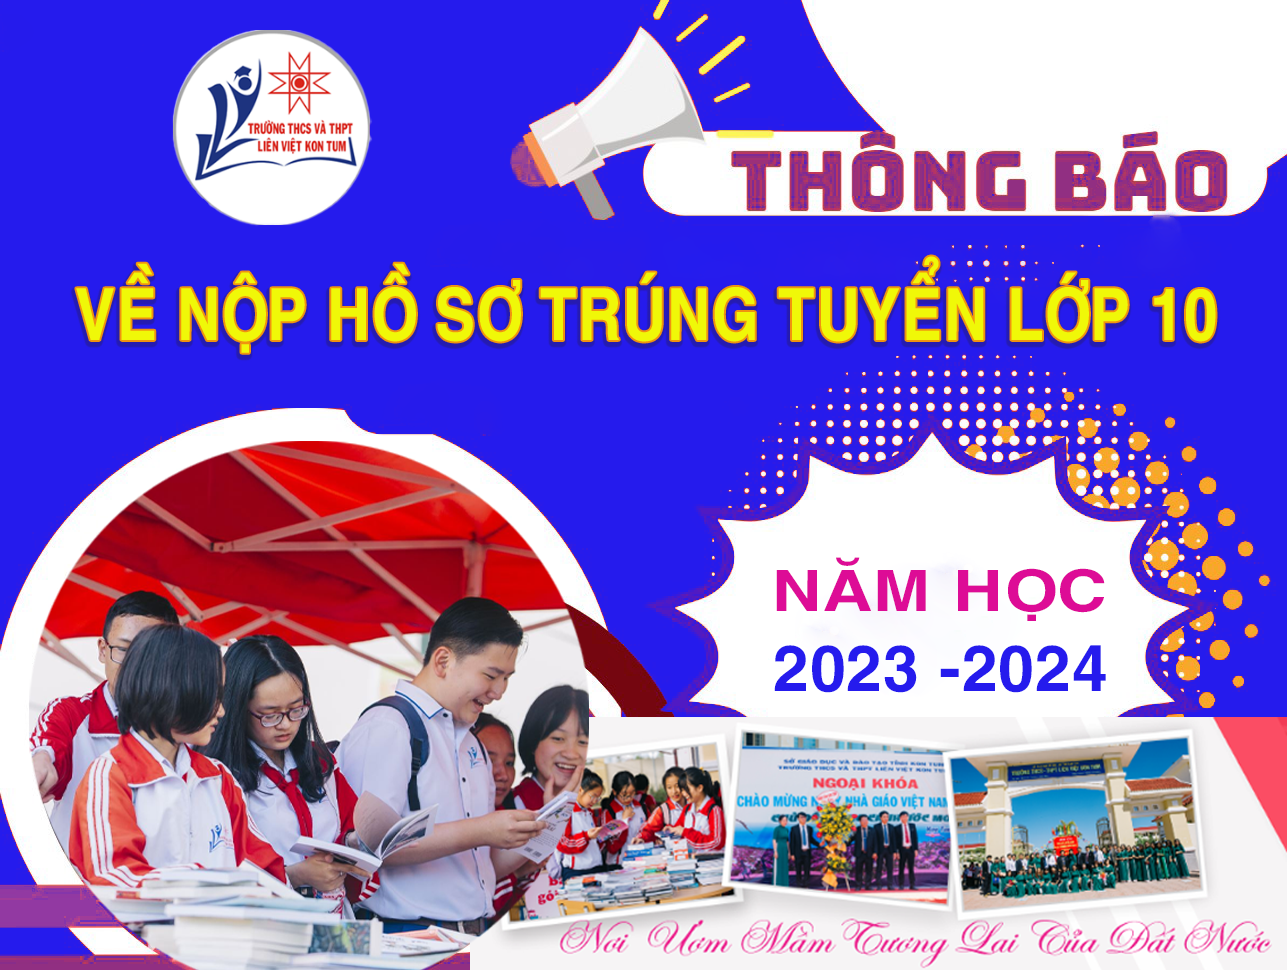 Thông báo về nộp hồ sơ trung truyển lớp 10, Trường THCS và THPT Liên Việt Kon Tum năm học 2023 - 2024